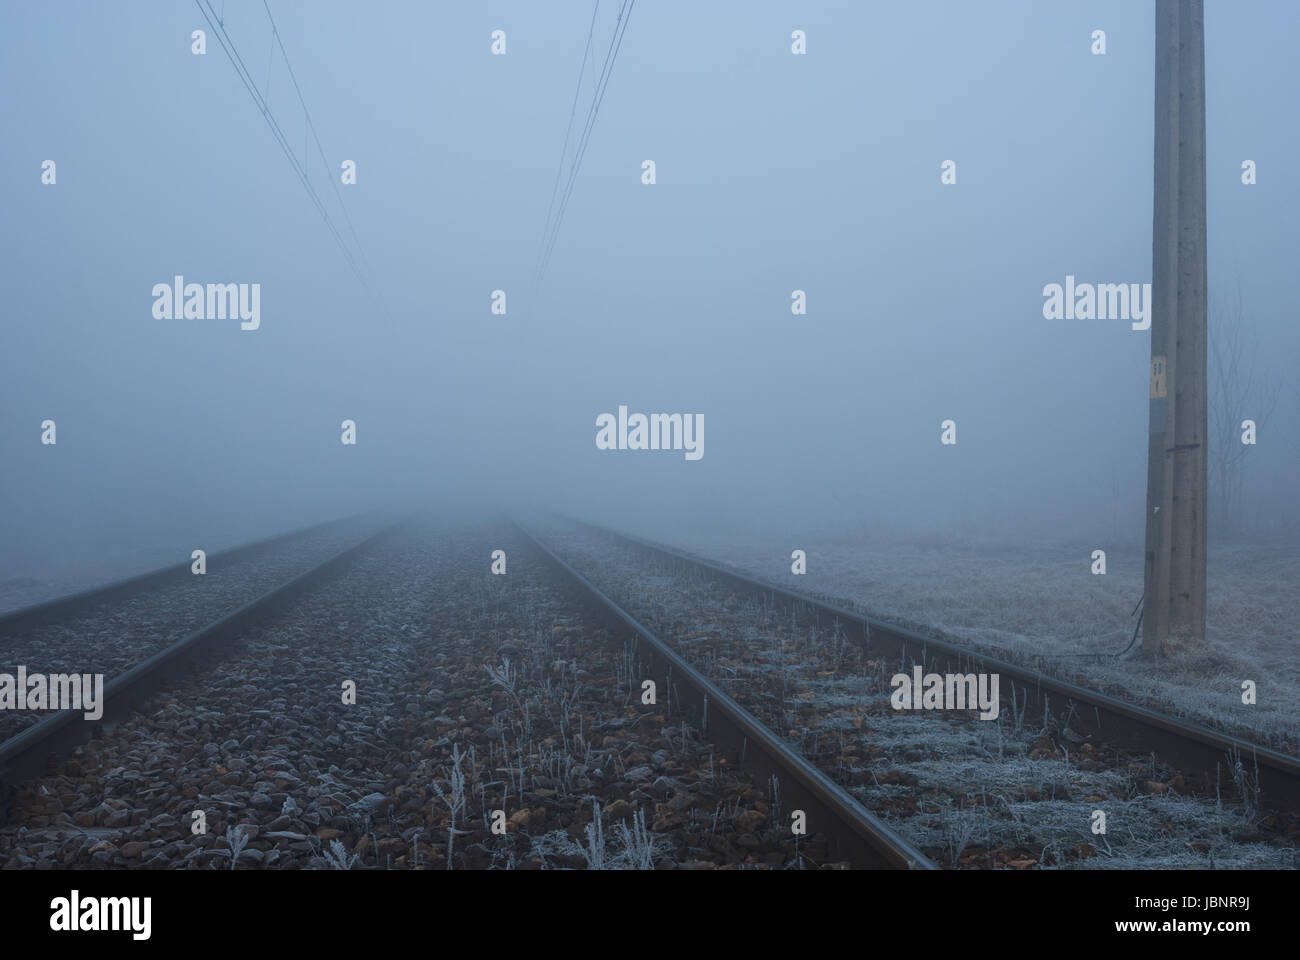 Des voies de chemin de fer dans le brouillard Banque D'Images